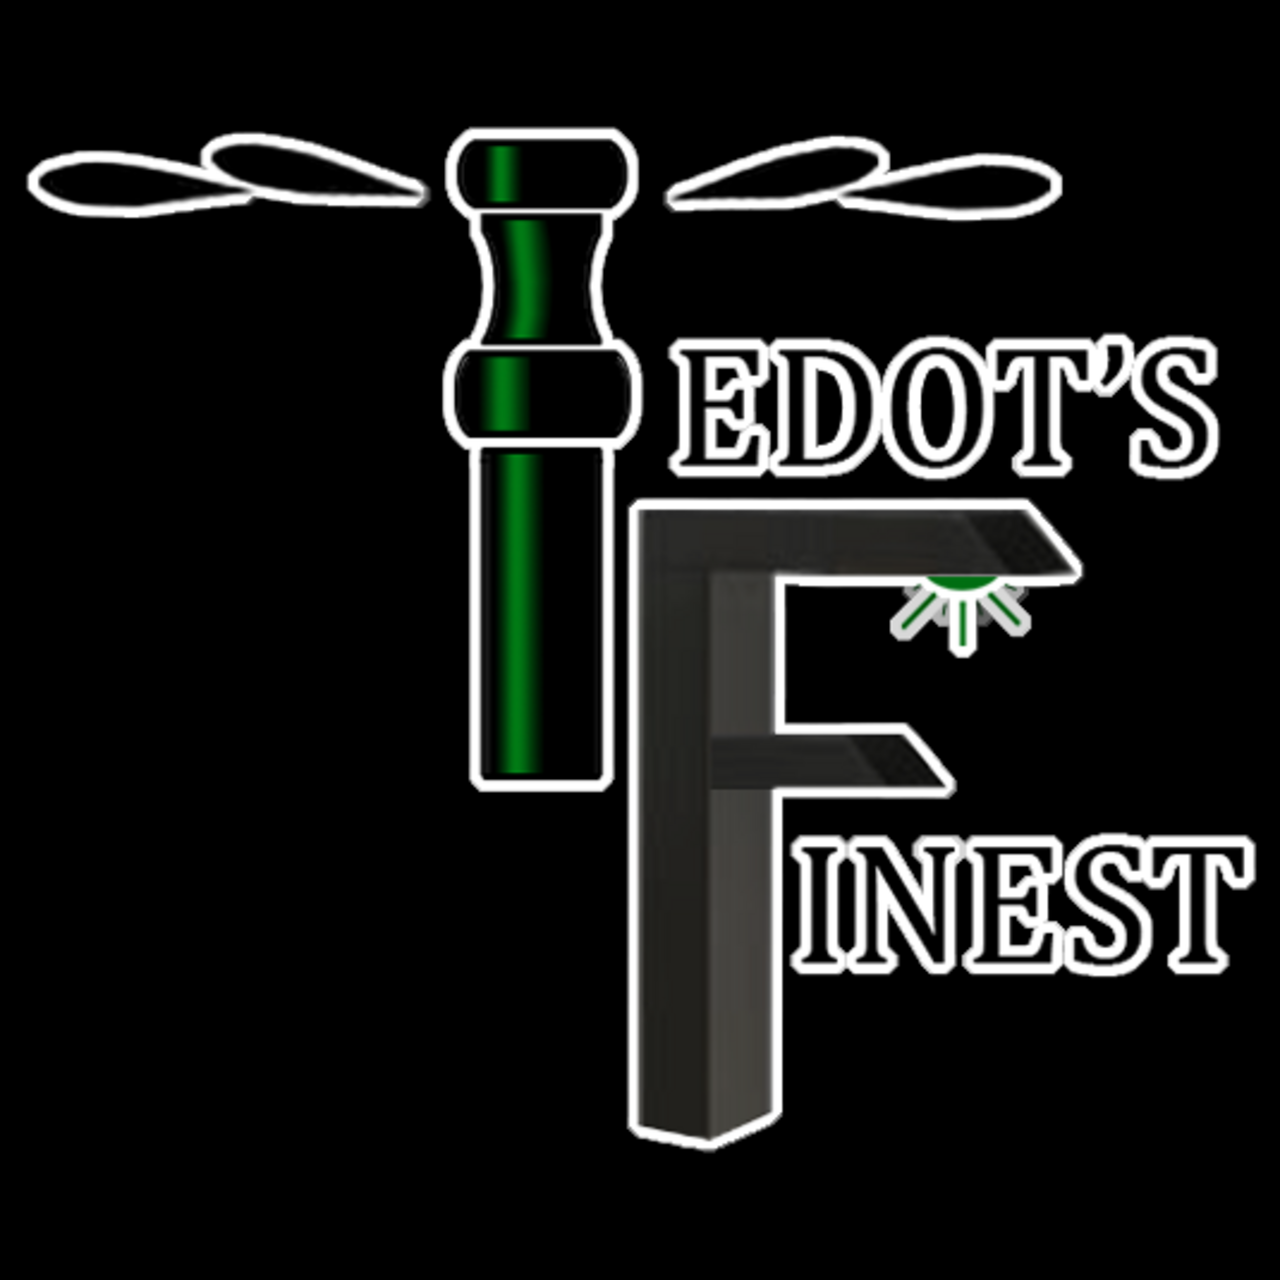 Tedot's Finest Landscaping & Sprinklers's logo